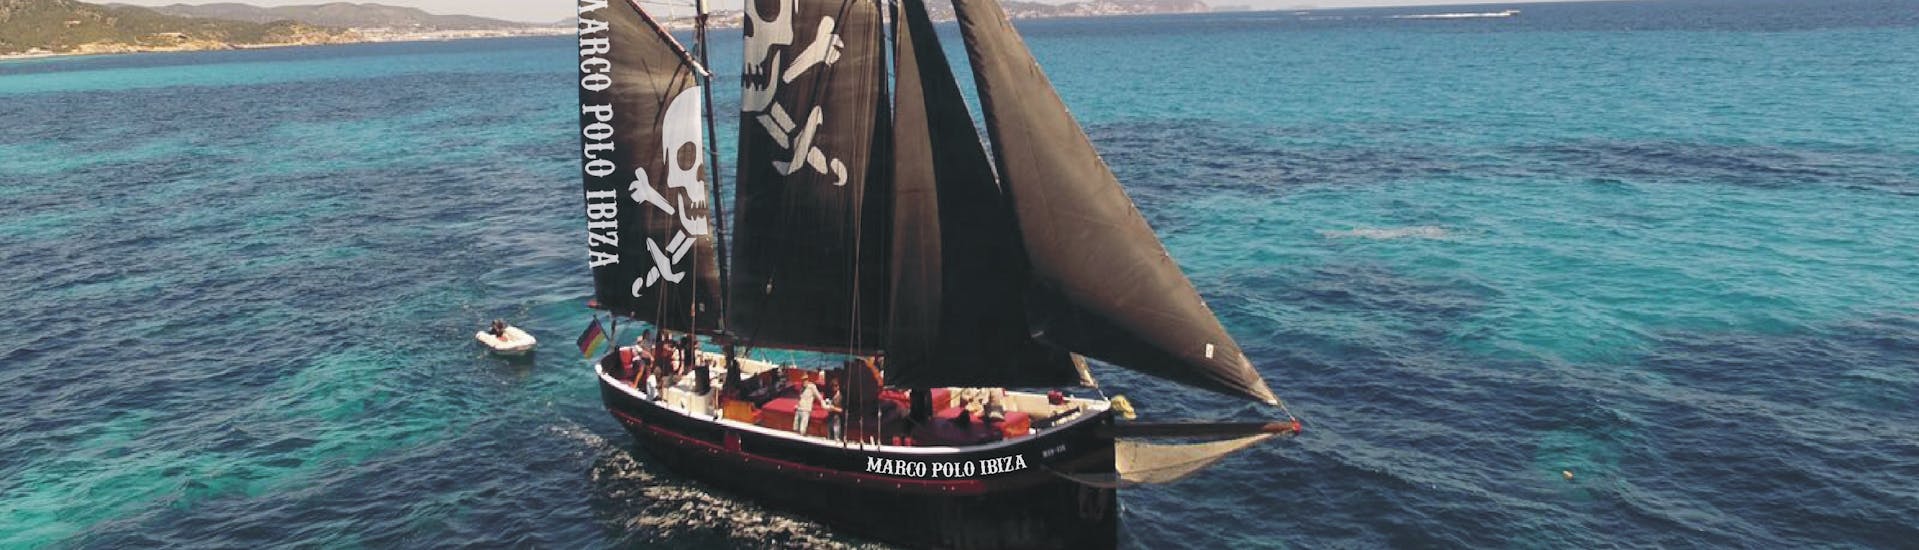 Unser Piratenboot liegt mitten auf dem Wasser während des Piraten-Segeltrips nach Formentera von Ibiza aus mit Apéritif & Schnorcheln mit Marco Polo Ibiza.